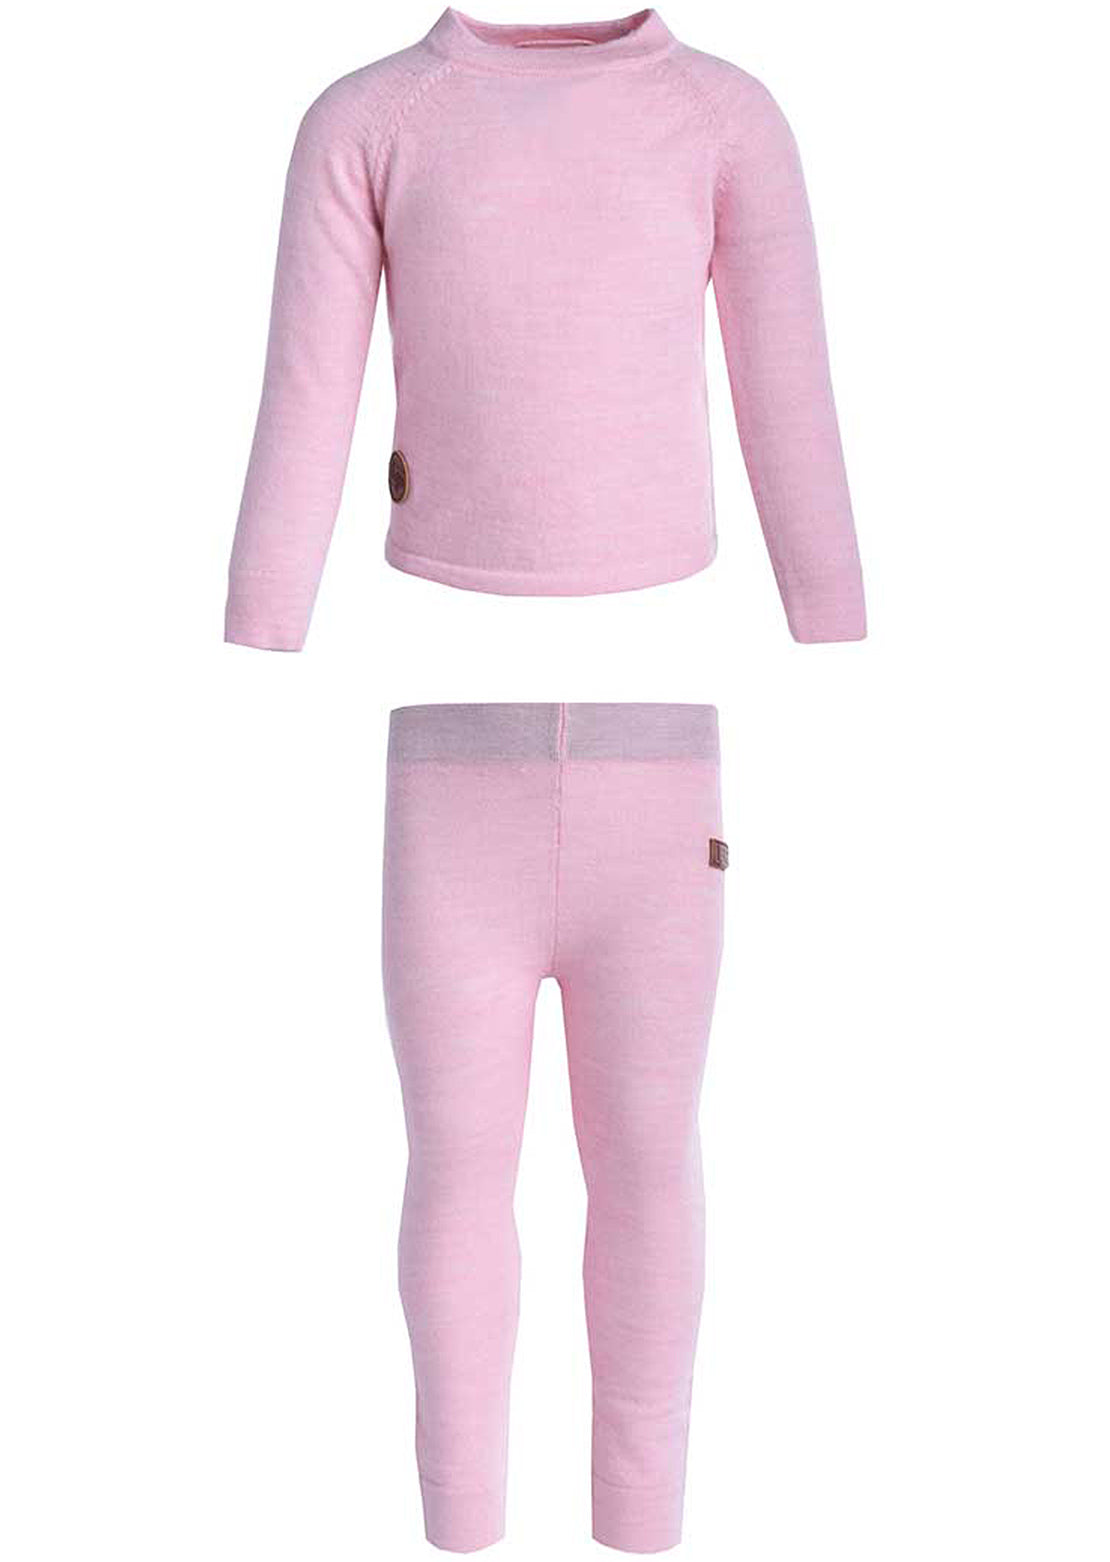 L&amp;P Toddler Merino Wool Thermal Underwear Set Heather Pink